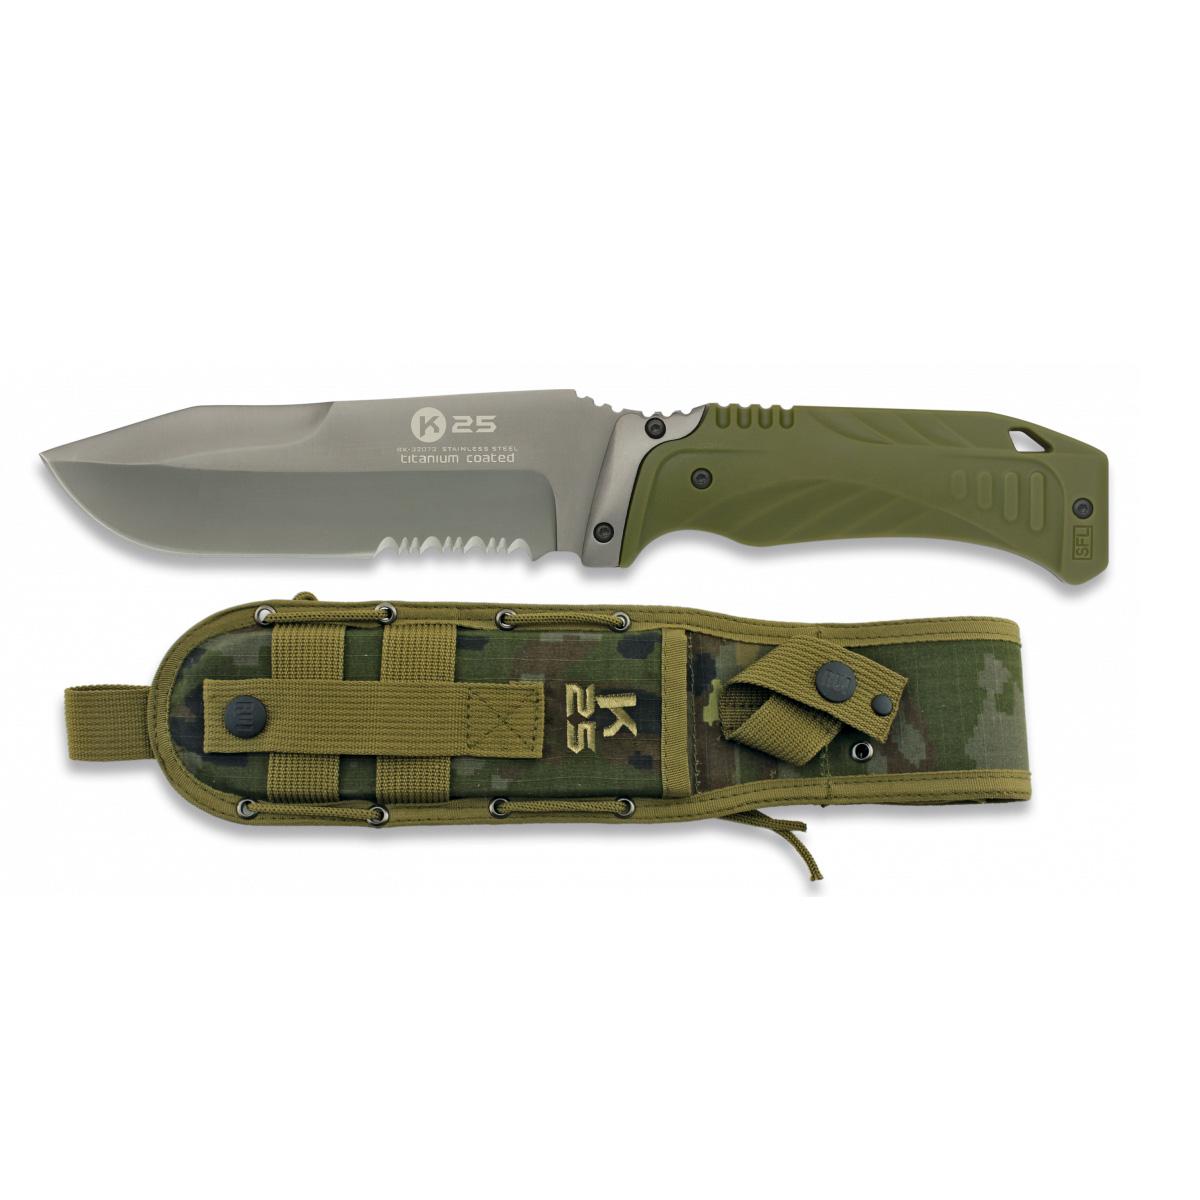 Cuchillo Tactico K25 Army